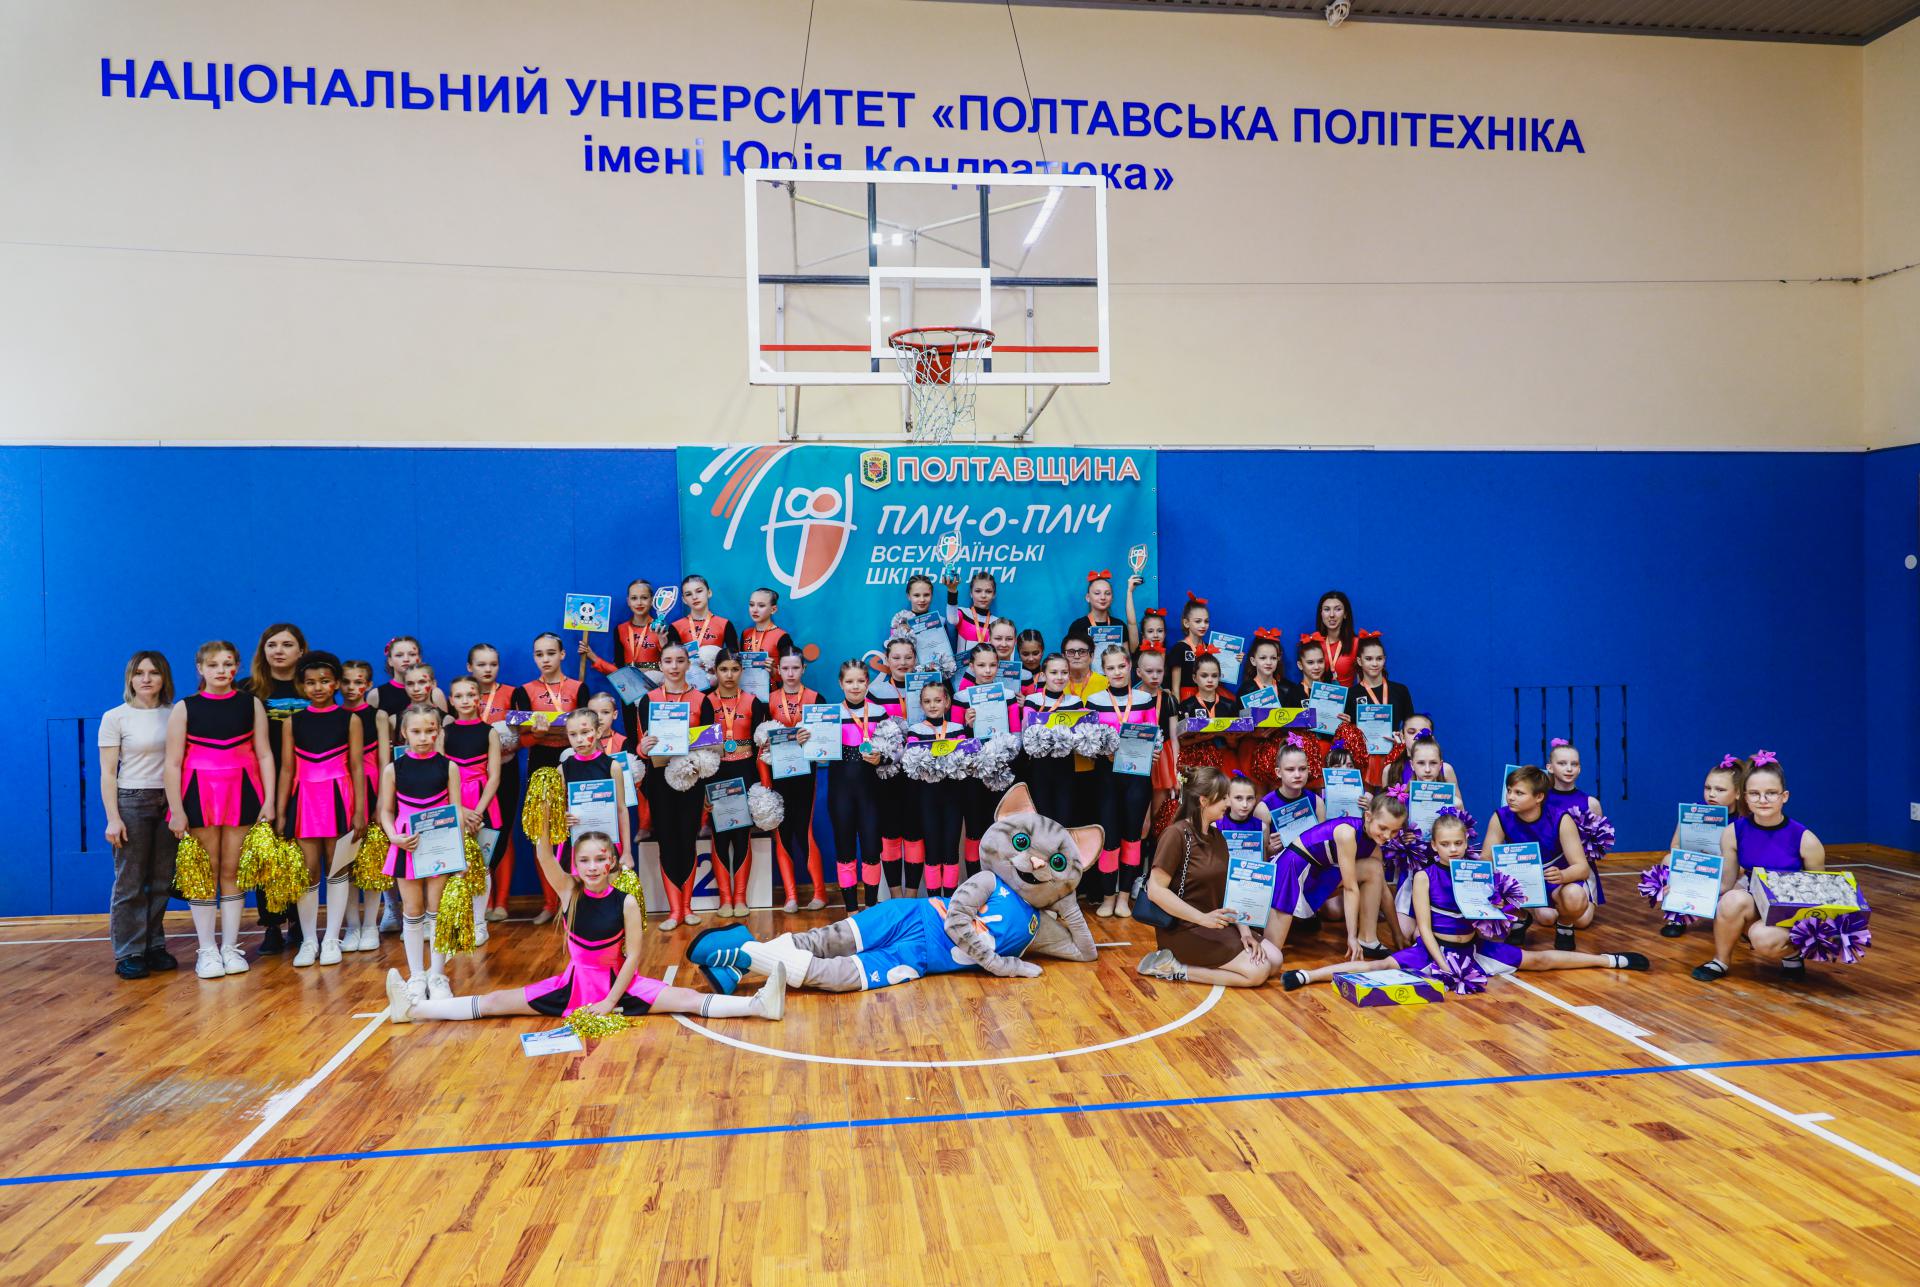 Визначили команду-переможницю обласного етапу змагань «Пліч-о-пліч всеукраїнські шкільні ліги» з черлідингу